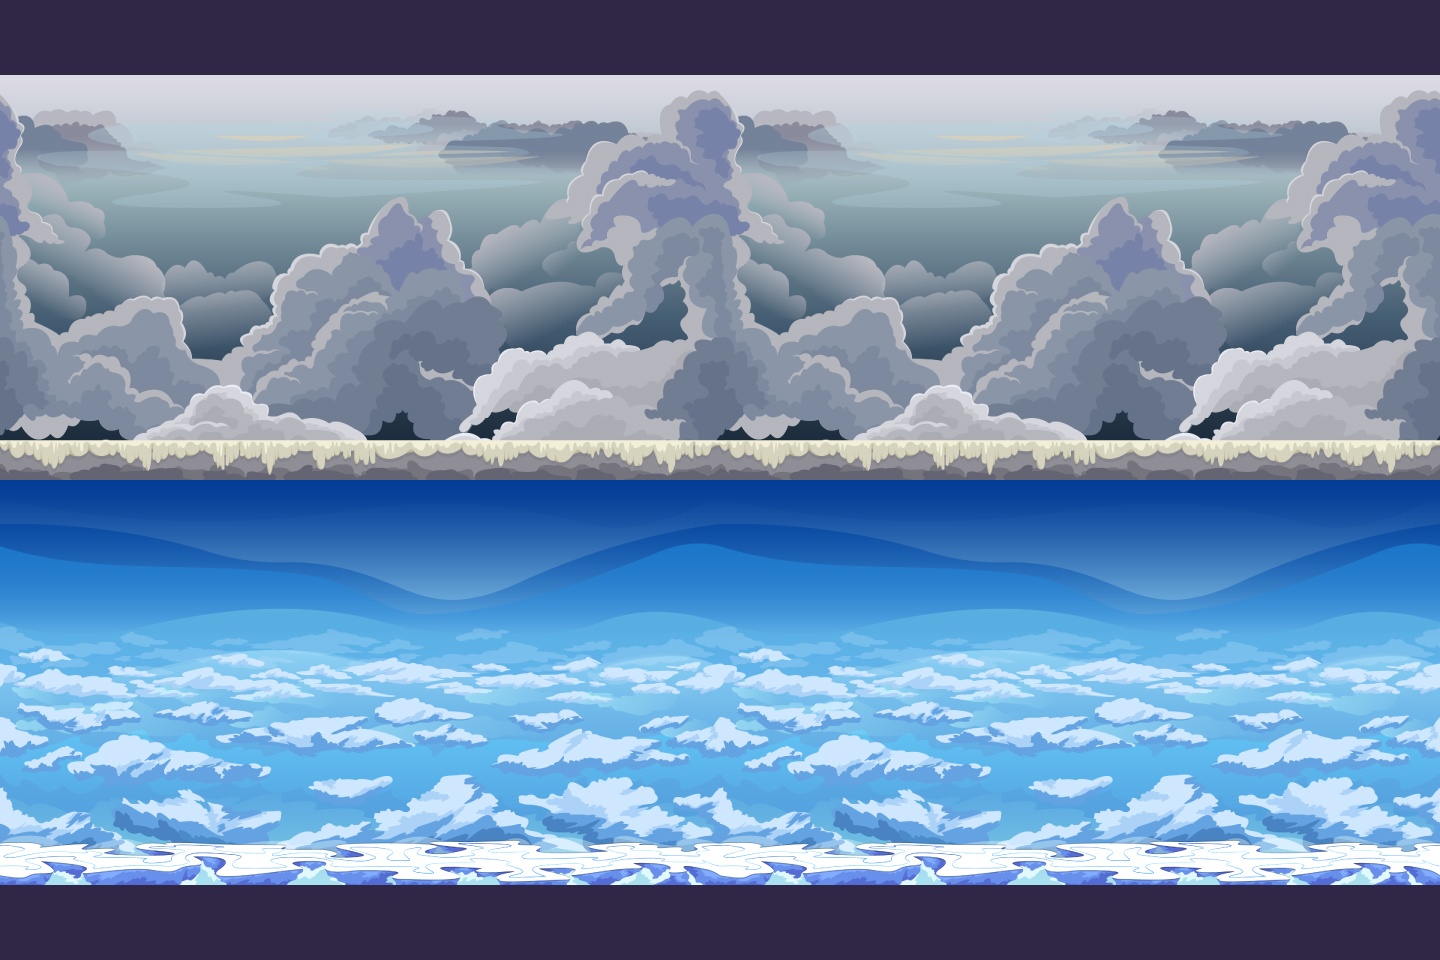 Nếu bạn đang tìm kiếm một hình ảnh phù hợp với game của mình, hãy xem ngay Sky 2D Game Backgrounds. Đây là một bức tranh tuyệt đẹp sử dụng pixel art để tạo ra một bầu trời thật sự ấn tượng.